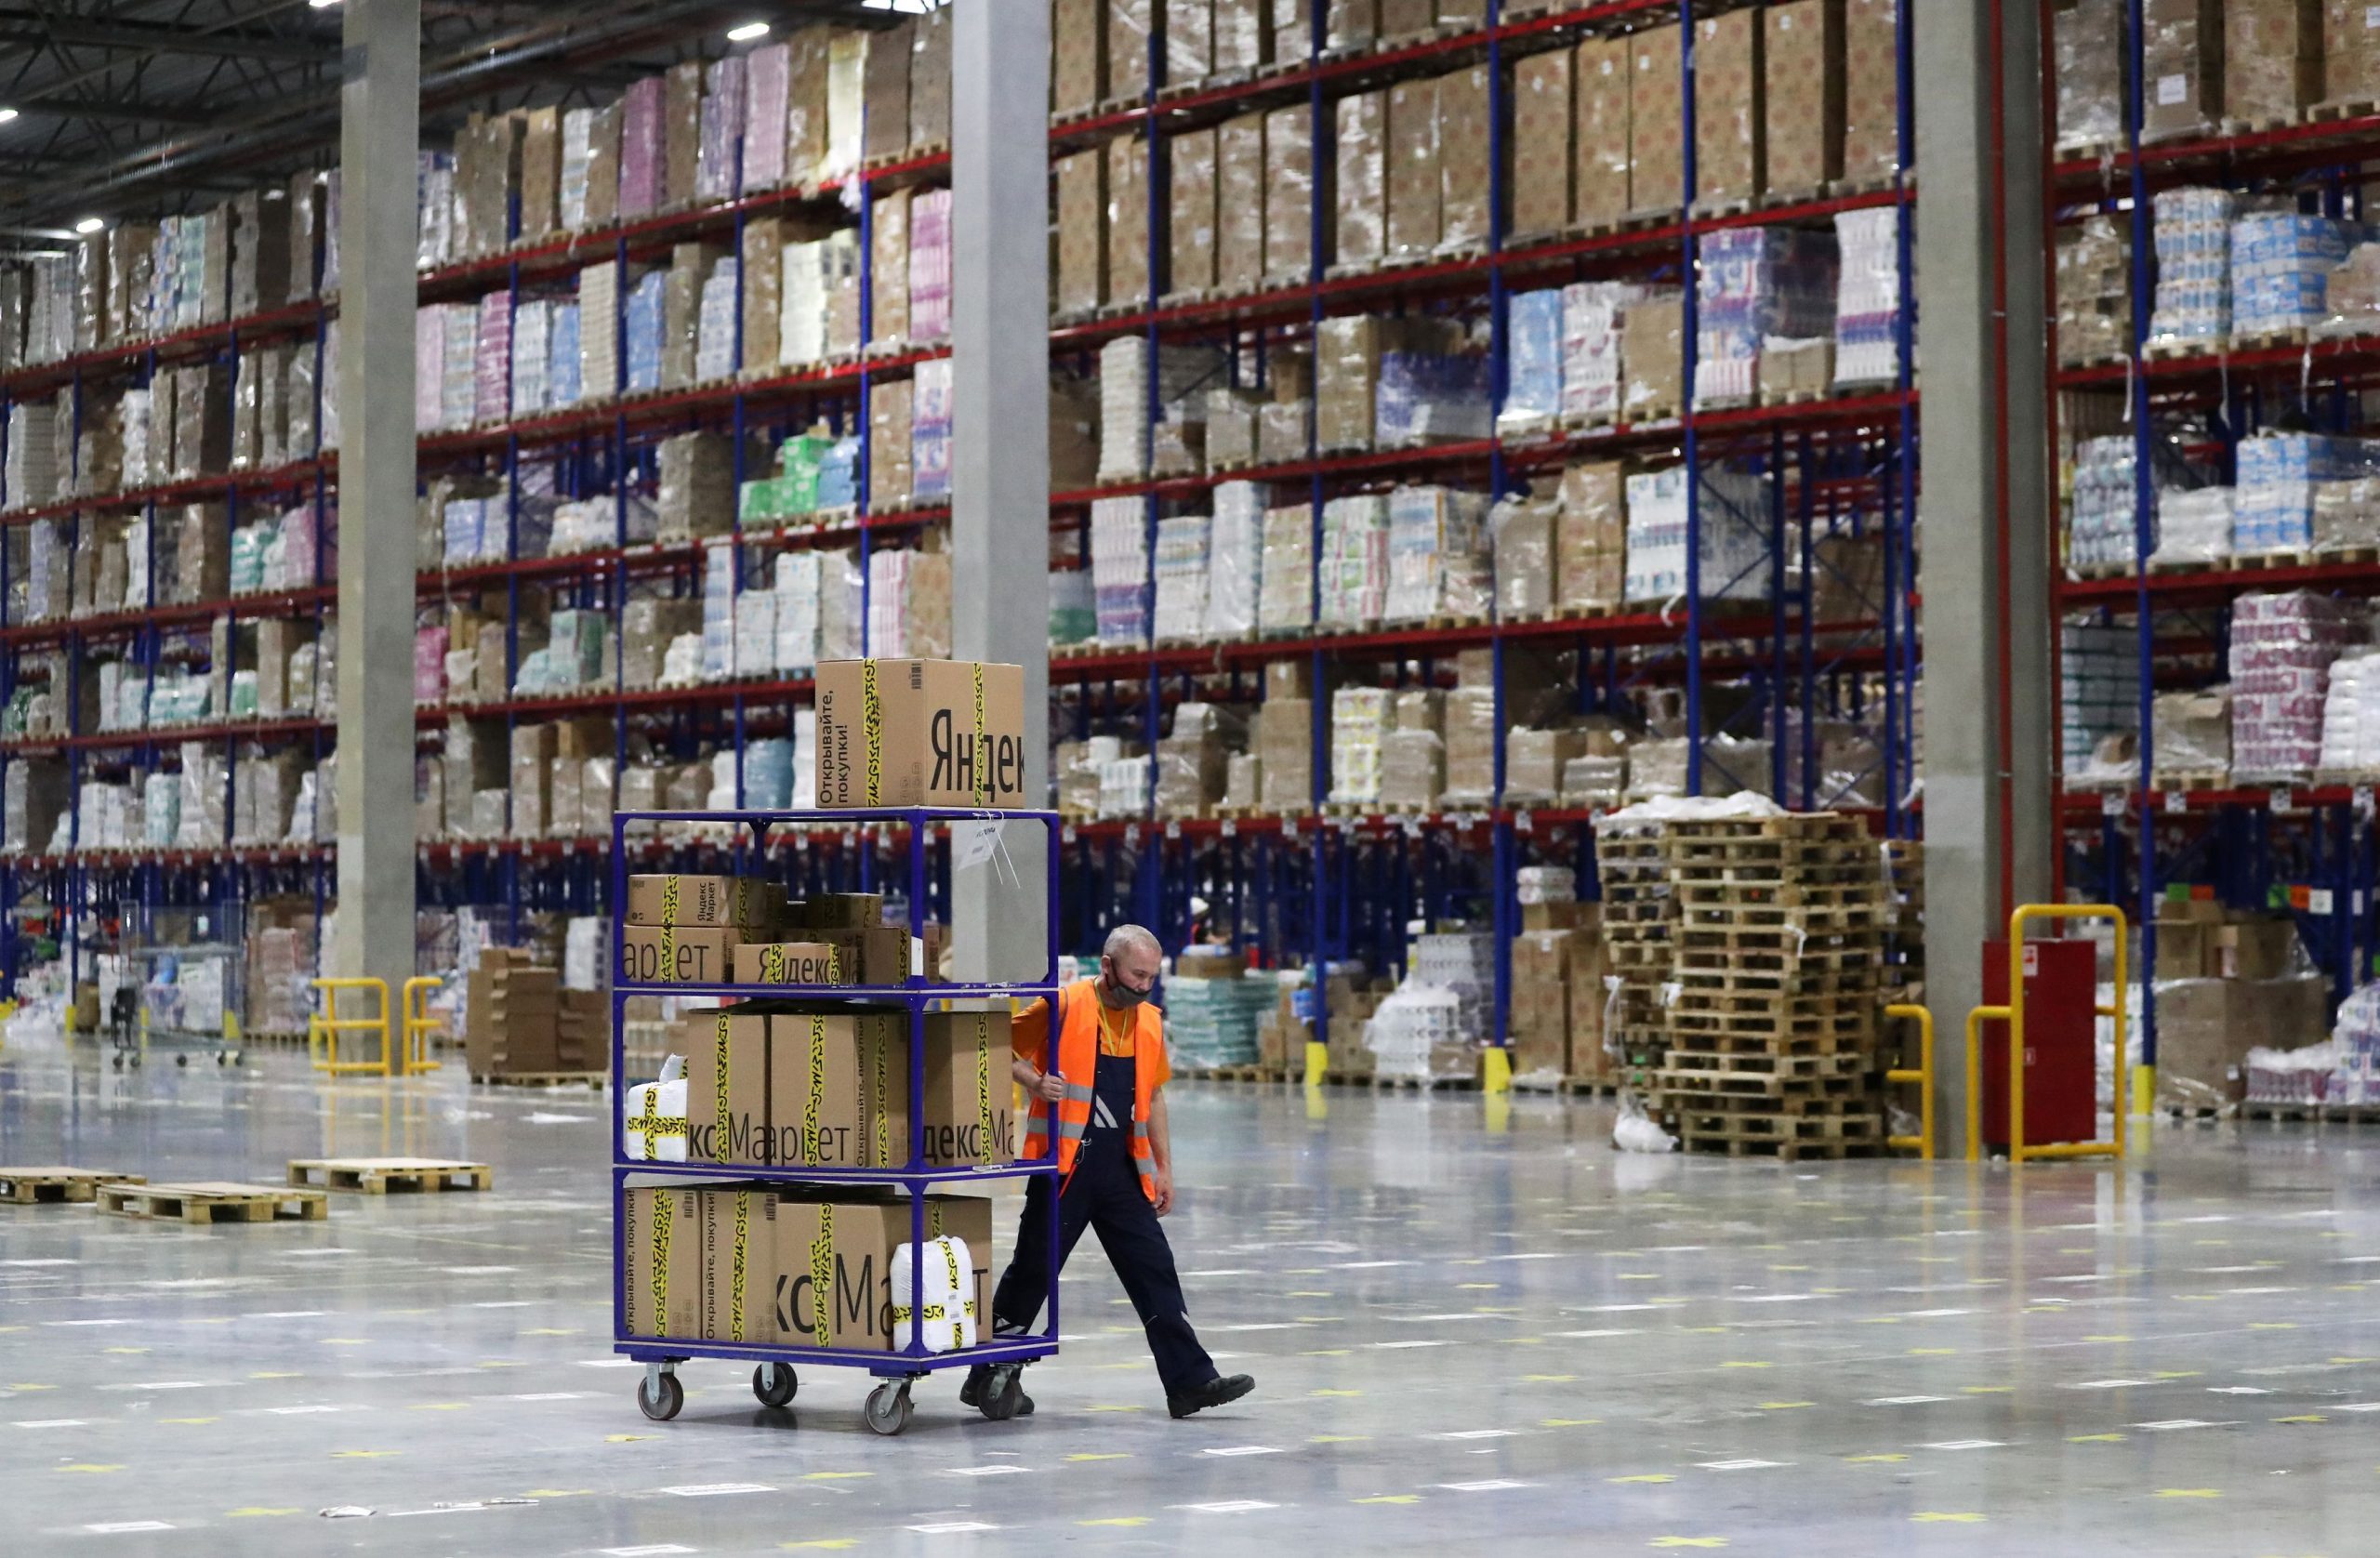 ΕΣΕΕ – Κατάρτιση 7.000 εργαζομένων σε ηλεκτρονικό εμπόριο και logistics